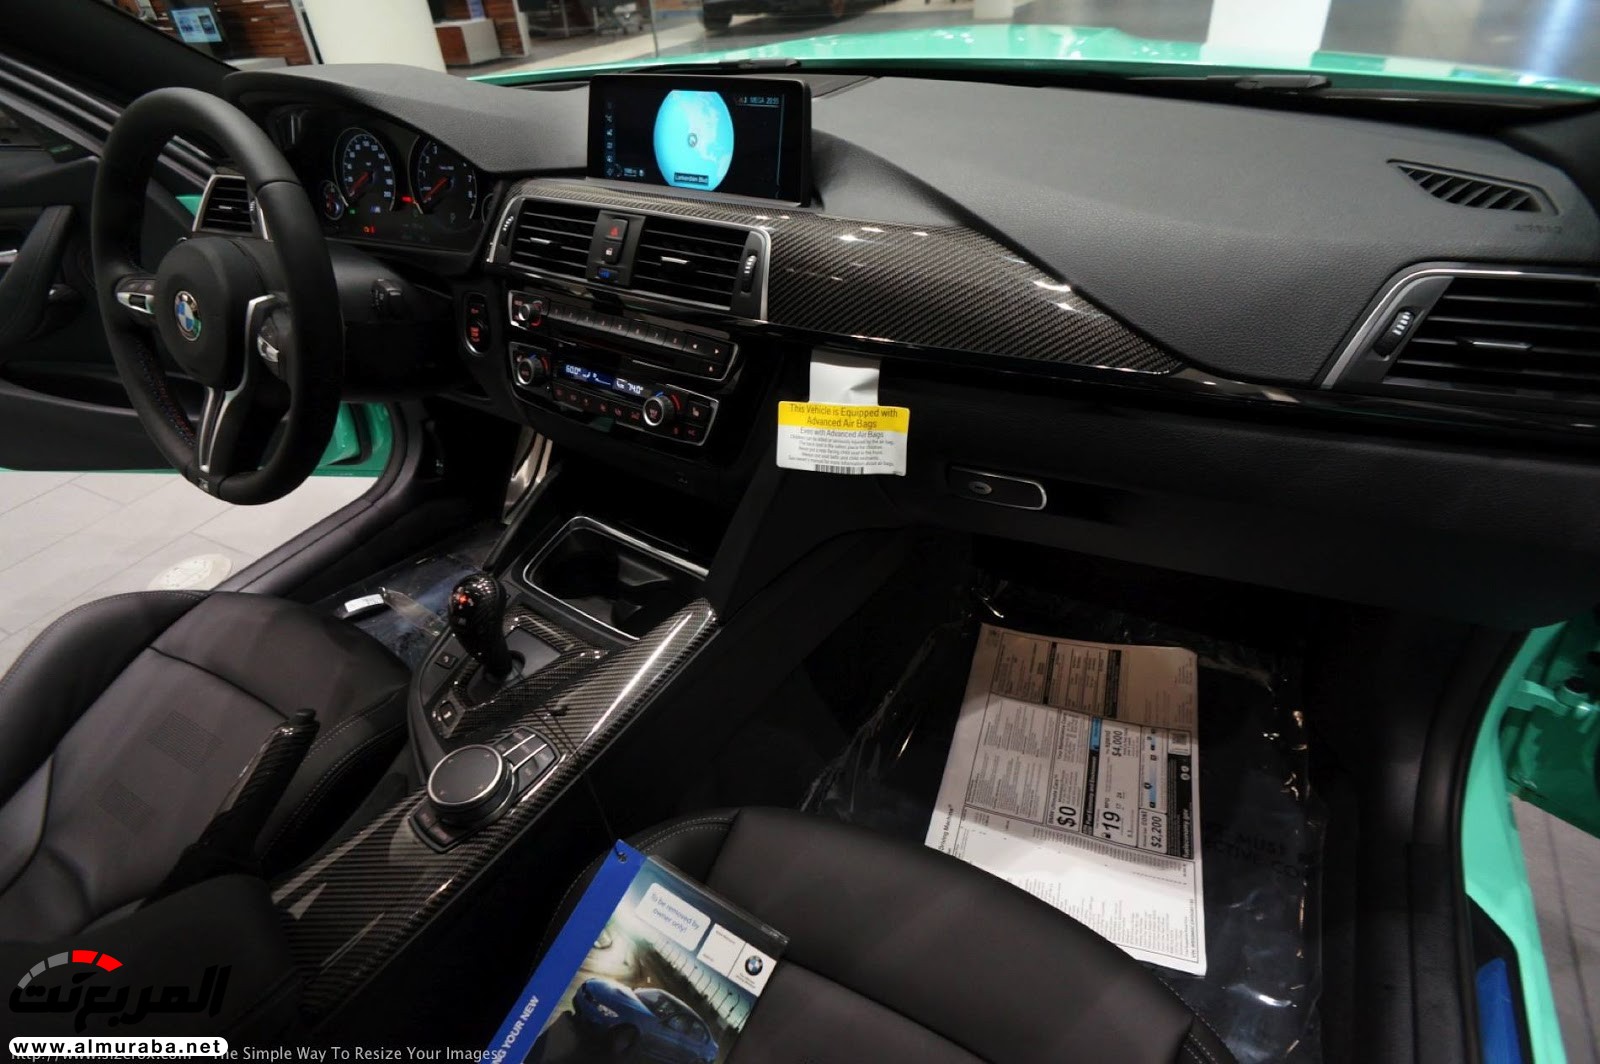 "بالصور" شاهد "بي إم دبليو" F80 M3 الخاصة بطلاء النعناع الأخضر BMW 119